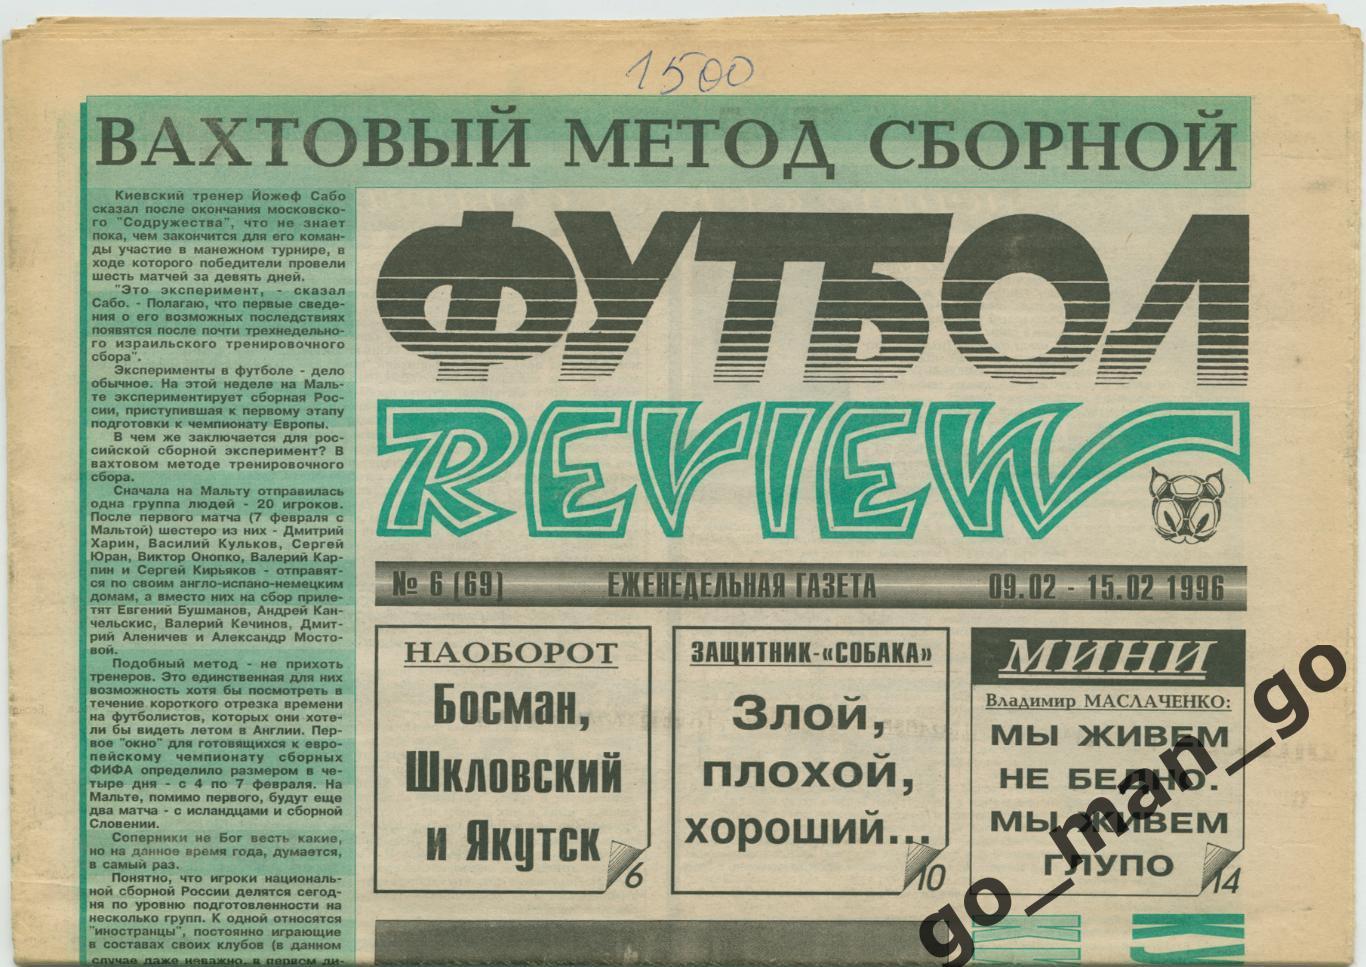 Еженедельник Футбол-Review (Футбол-Ревю), 09-15.02.1996, № 6.